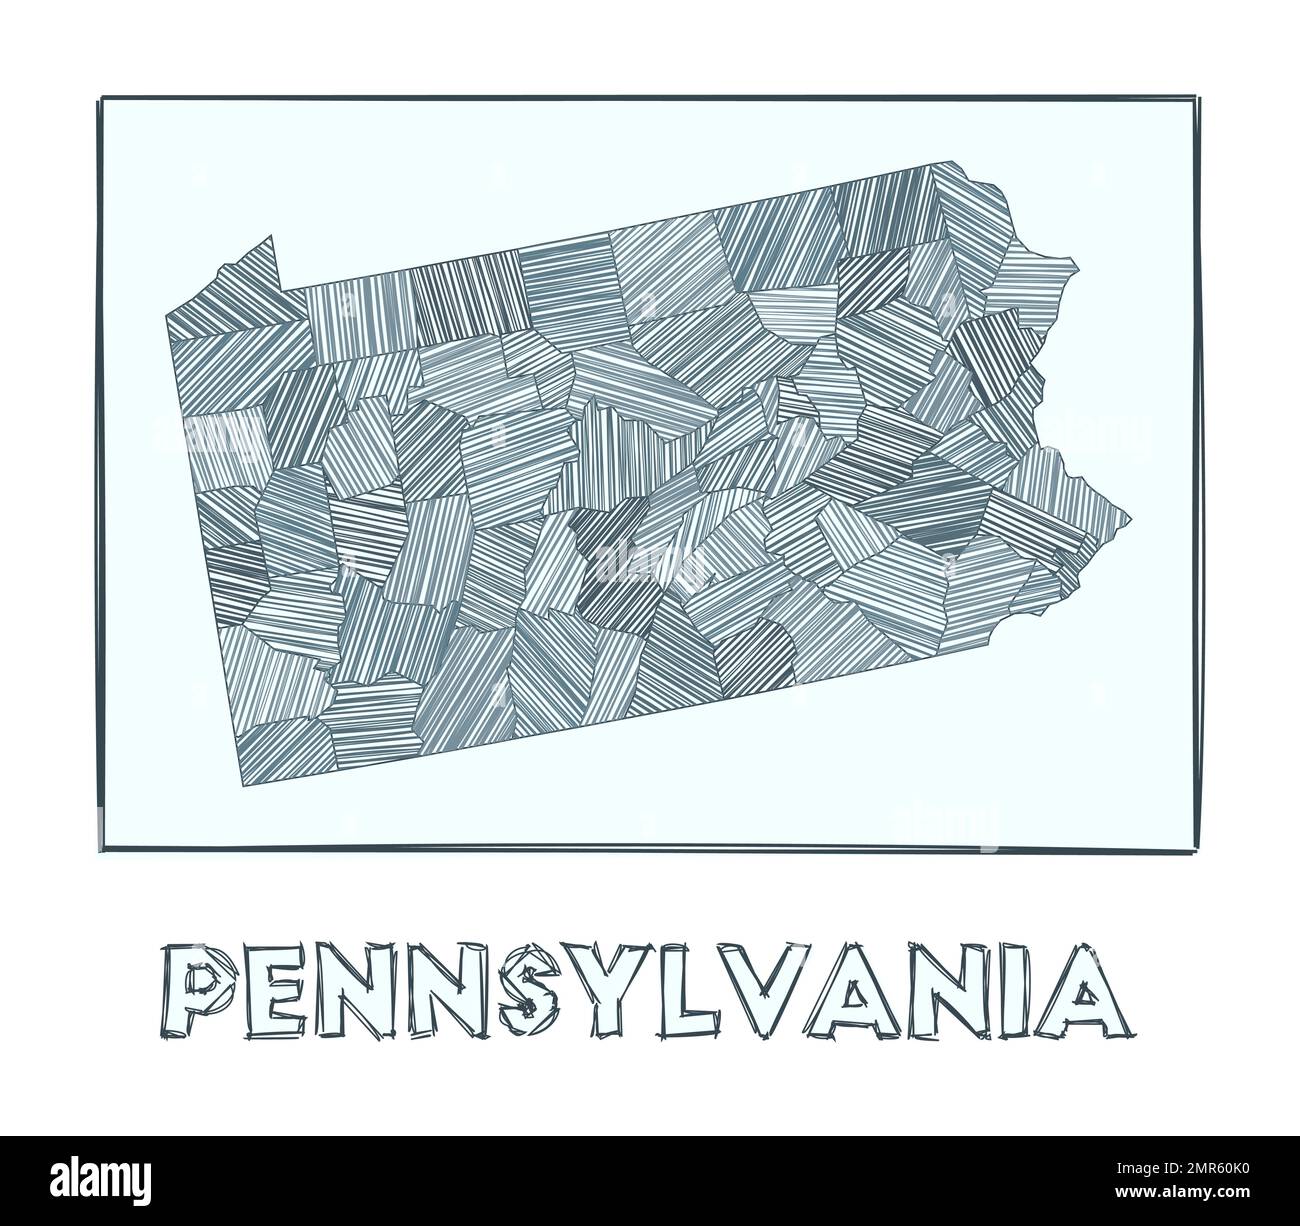 Mapa De Boceto De Pennsylvania Mapa Dibujado A Mano En Escala De Grises Del Estado De EE UU